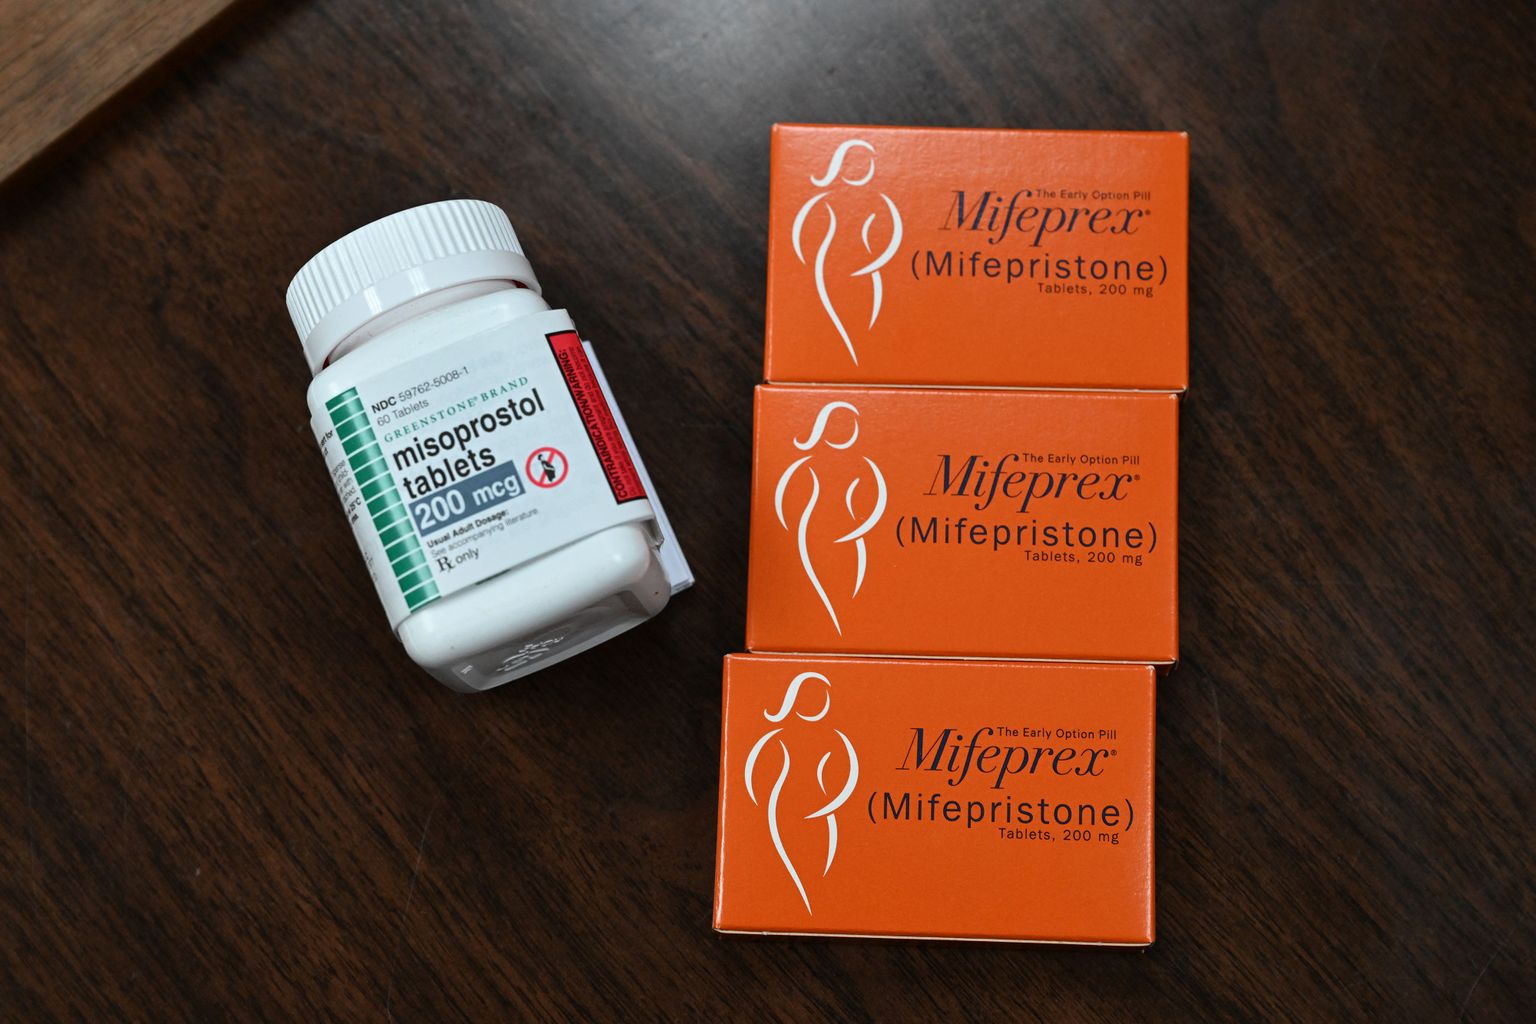 Abordivastase ravimi mifepristooni tabletid.